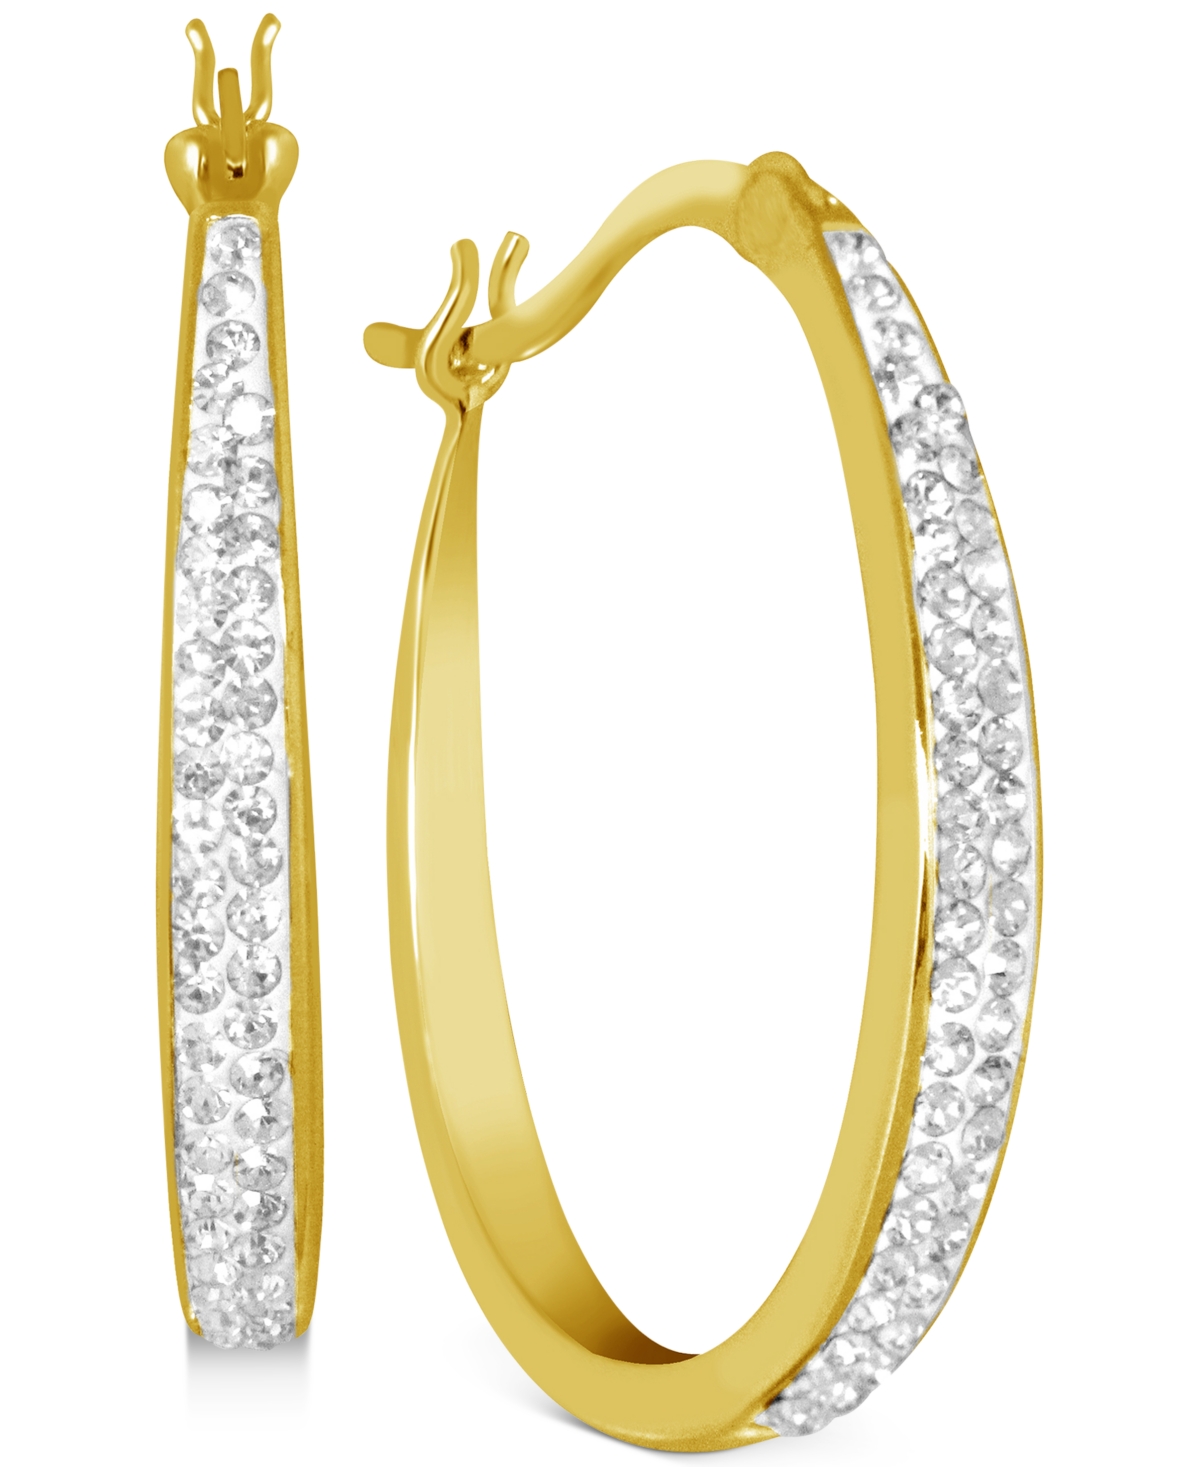 Crystal Tapered Hoop Earrings in Silver-Plate, 1.2" - Gold